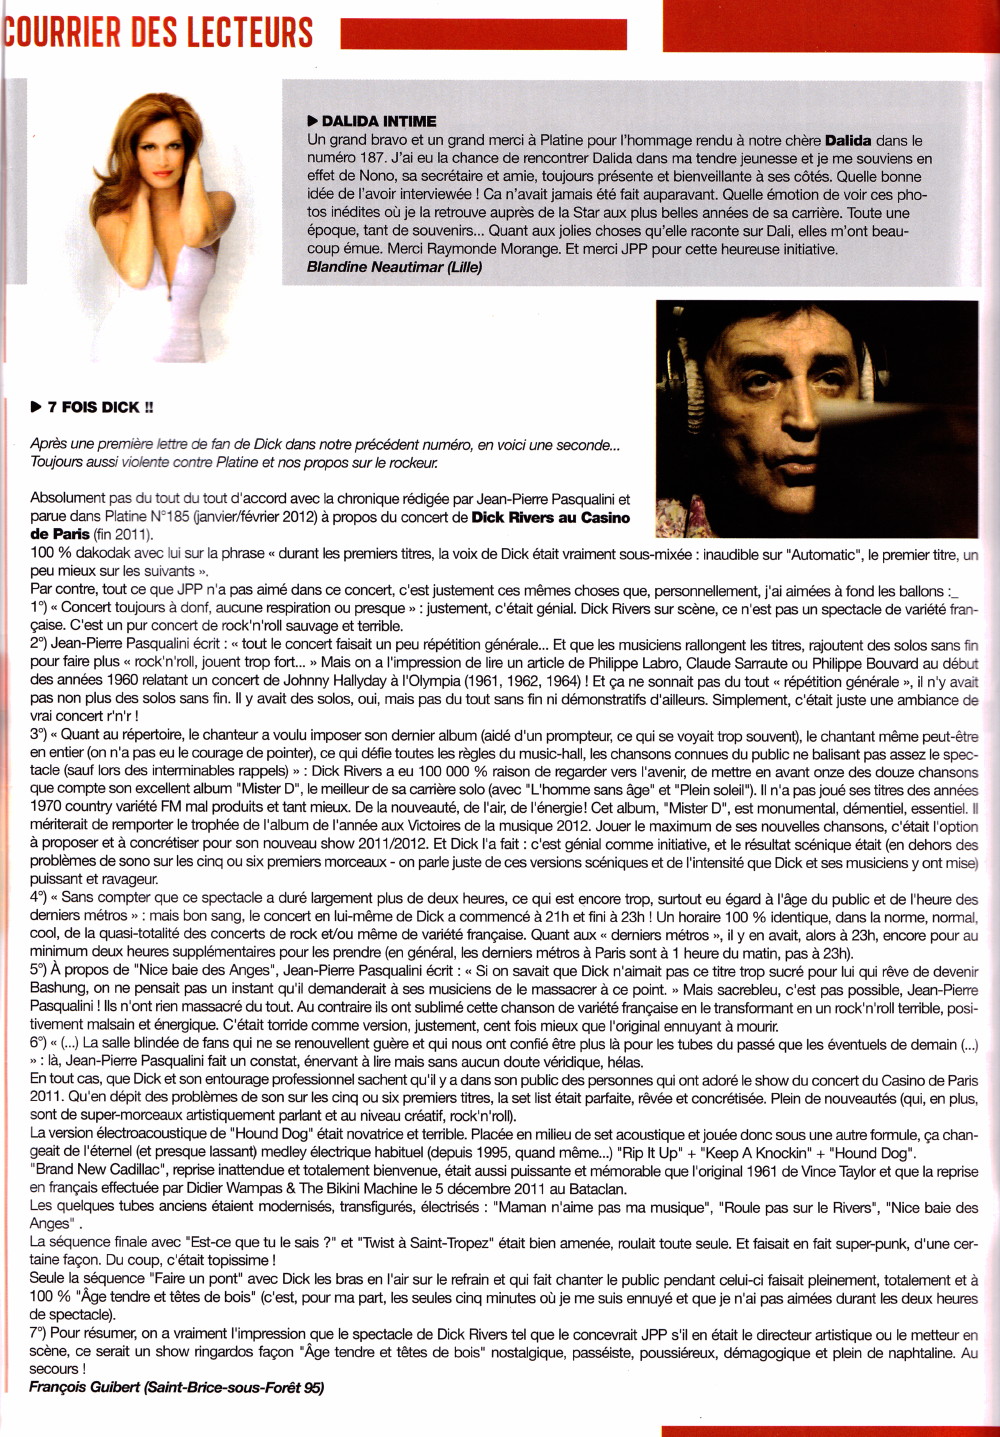 "Courrier des lecteurs" spécial DICK RIVERS dans "PLATINE" n°188 (juillet/août 2012) 12071207241314236110094859